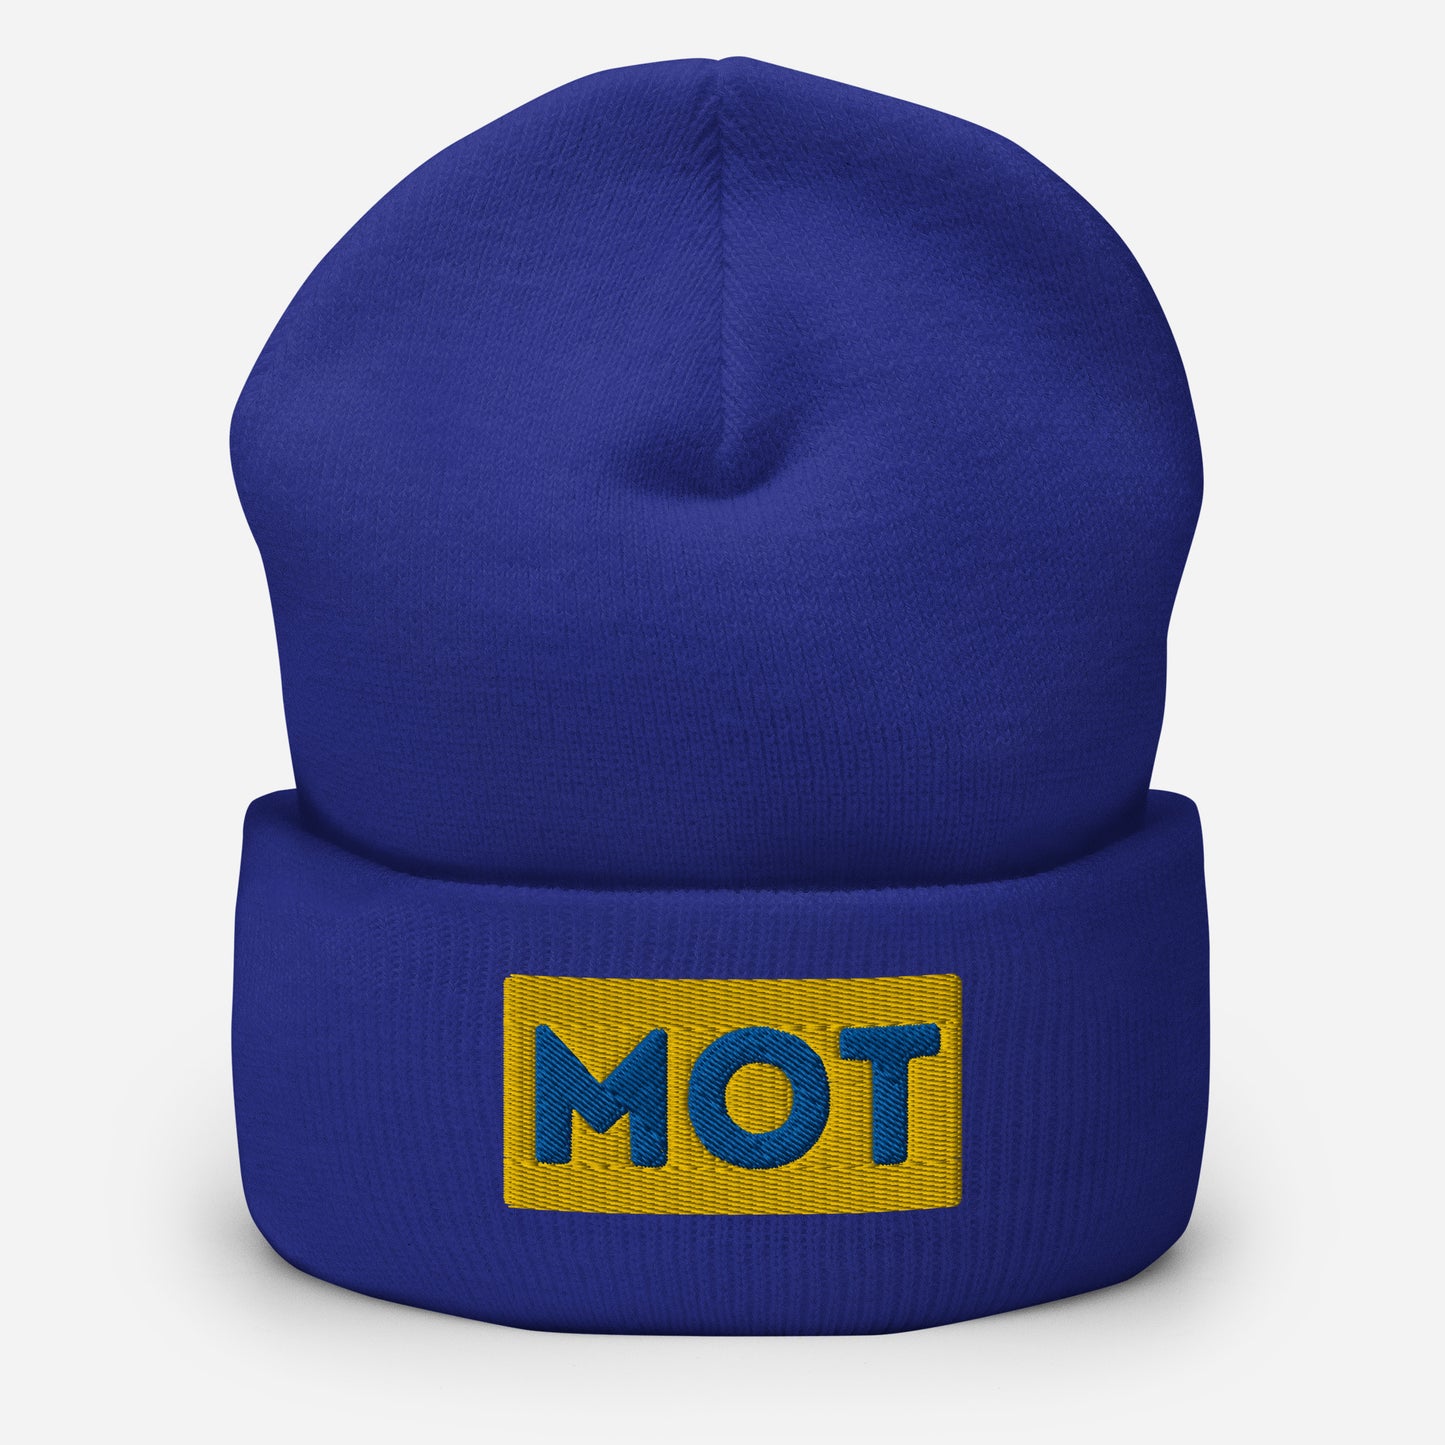 MOT Cuffed Beanie Hat